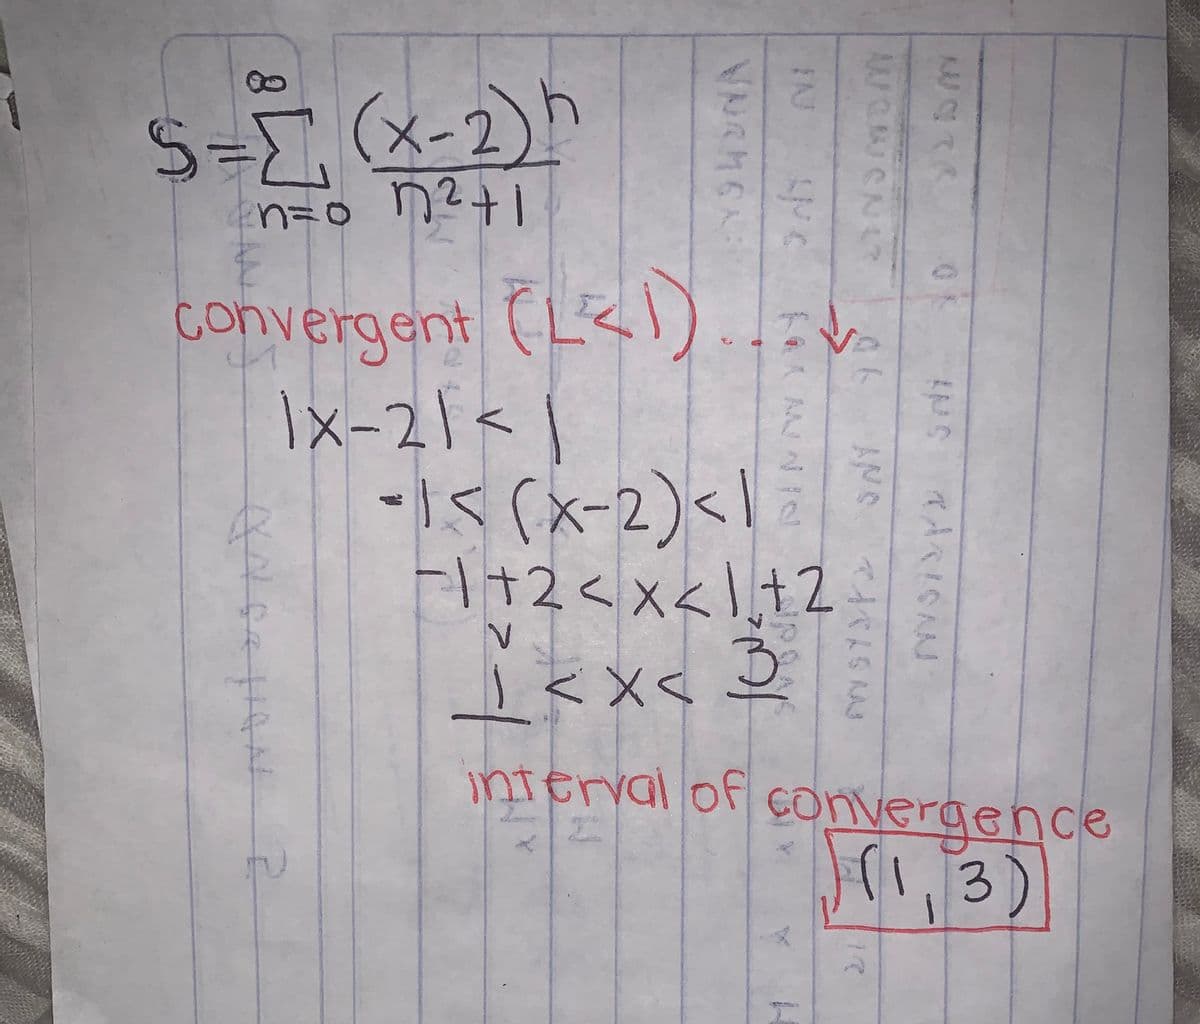 S=I (x-2)h
convergent (L<))
1x-2
2.
-15(x-2)</
Fl+2<x<2
±2
interval of çonvergence
r1,3)
代ARISAAJ
Aでの
FAJ
VNGMEN
